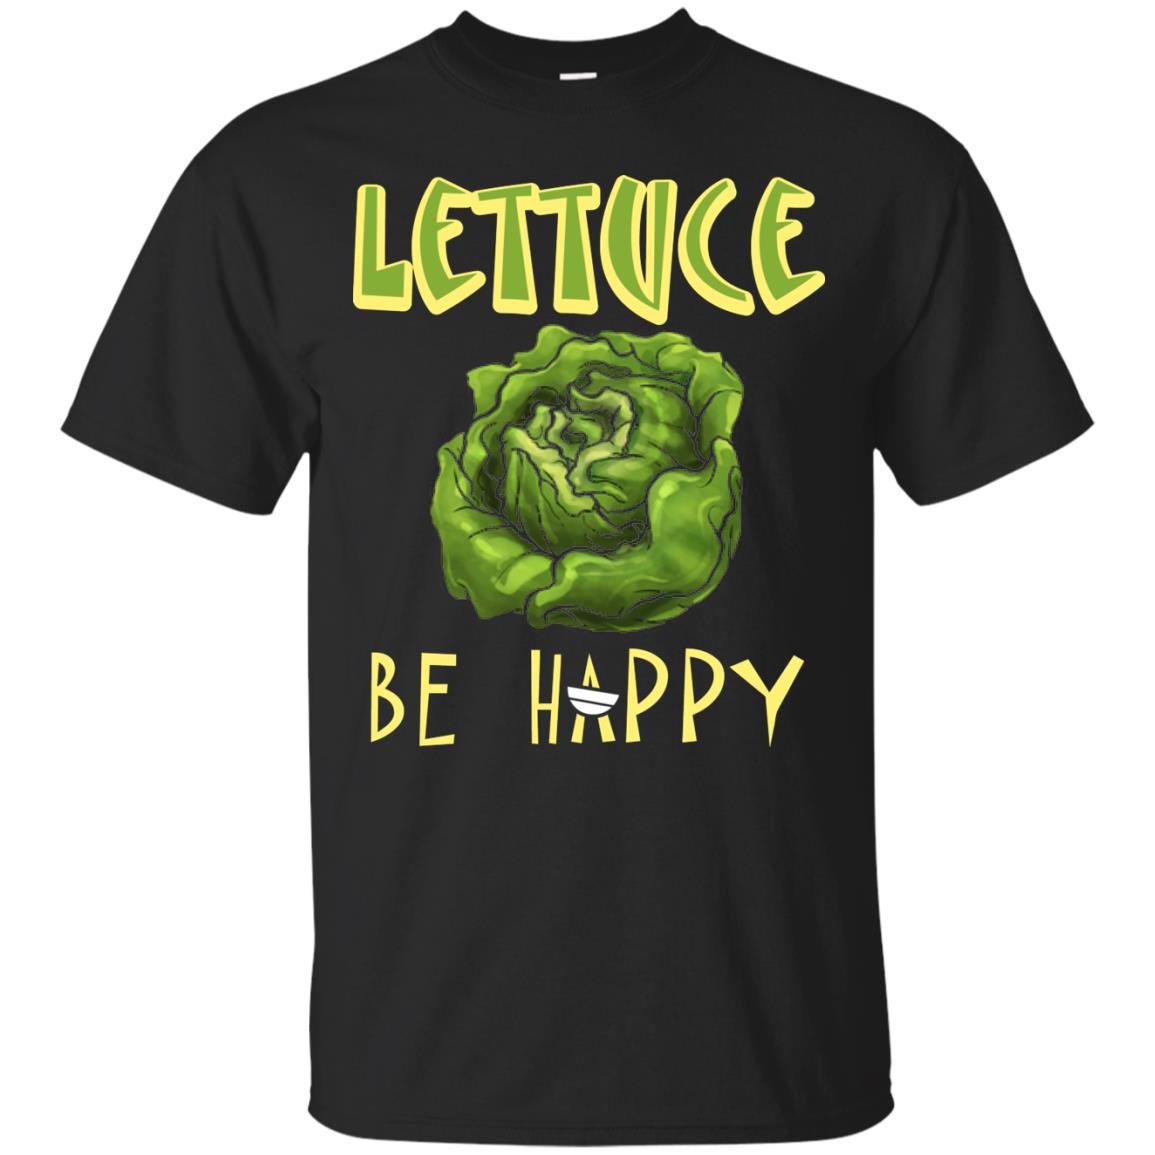 Lettuce Be Happy Lettuce Lover T-shirt